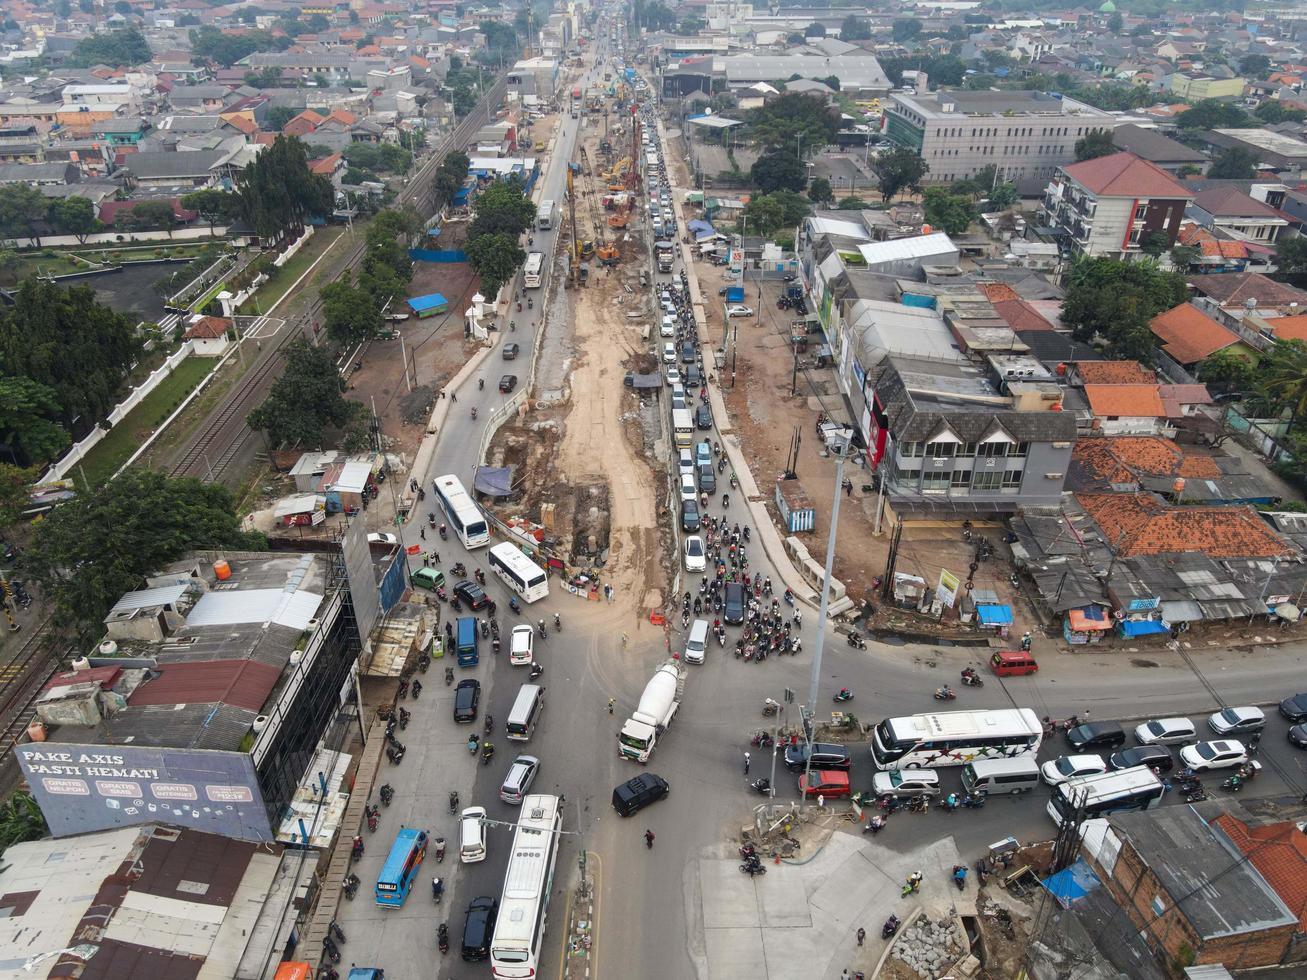 Bekasi, Indonésia 2021- engarrafamento nas ruas poluídas de Bekasi com o maior número de veículos motorizados e congestionamento de trânsito foto